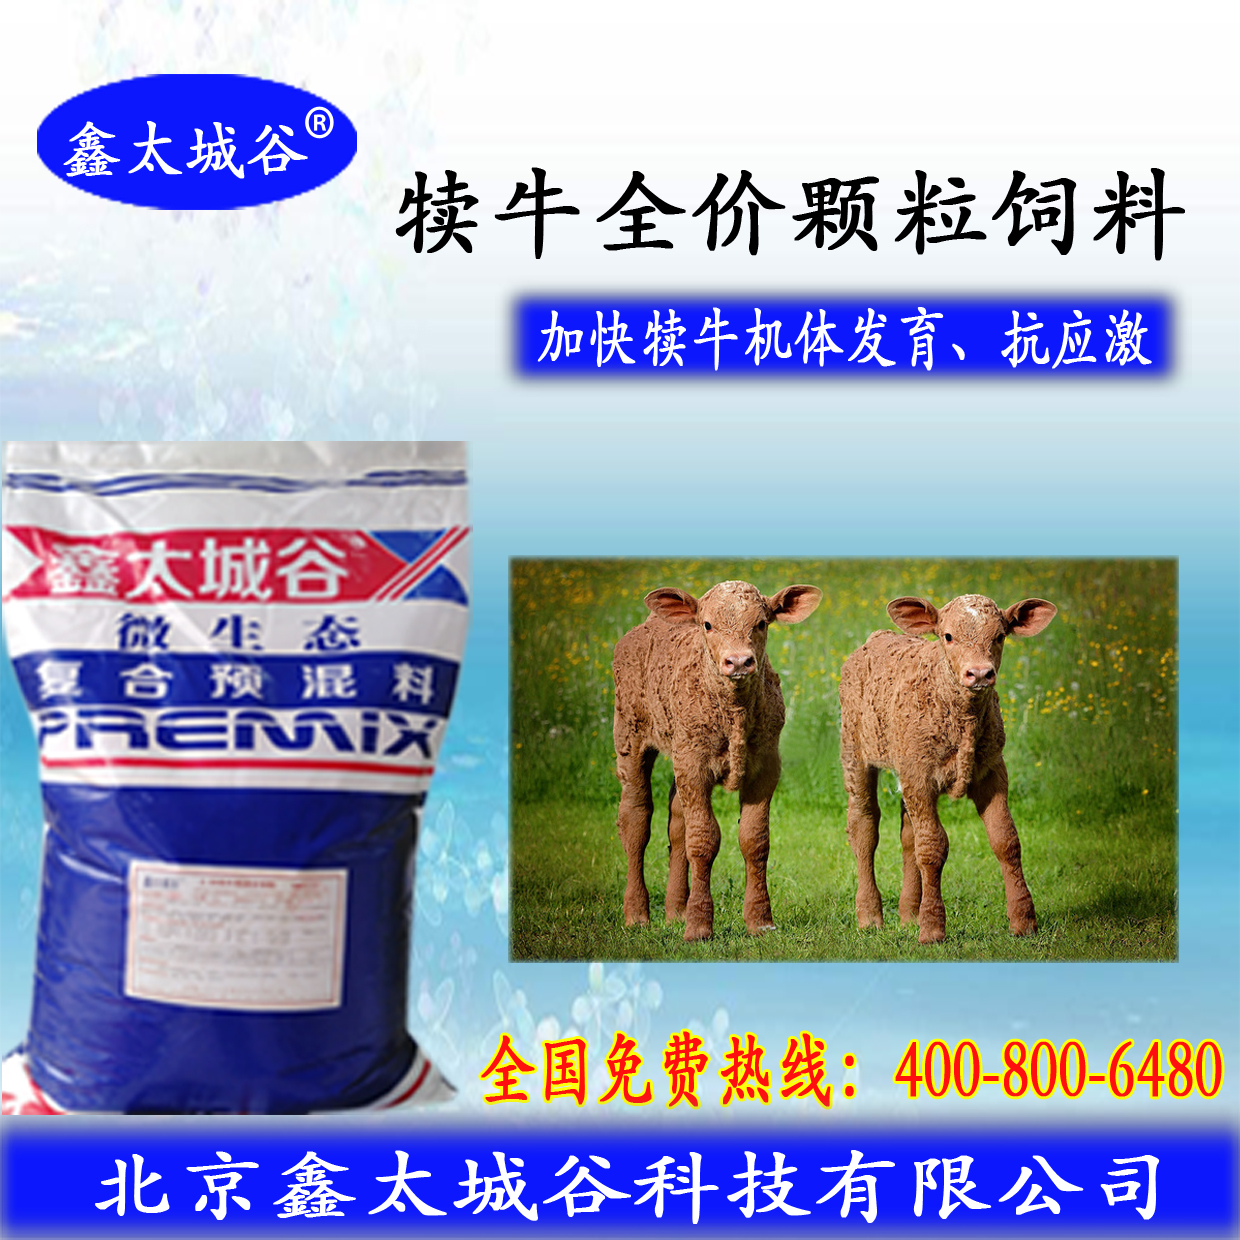 北京鑫太城谷微生态型开张骨架的犊牛颗粒料图片